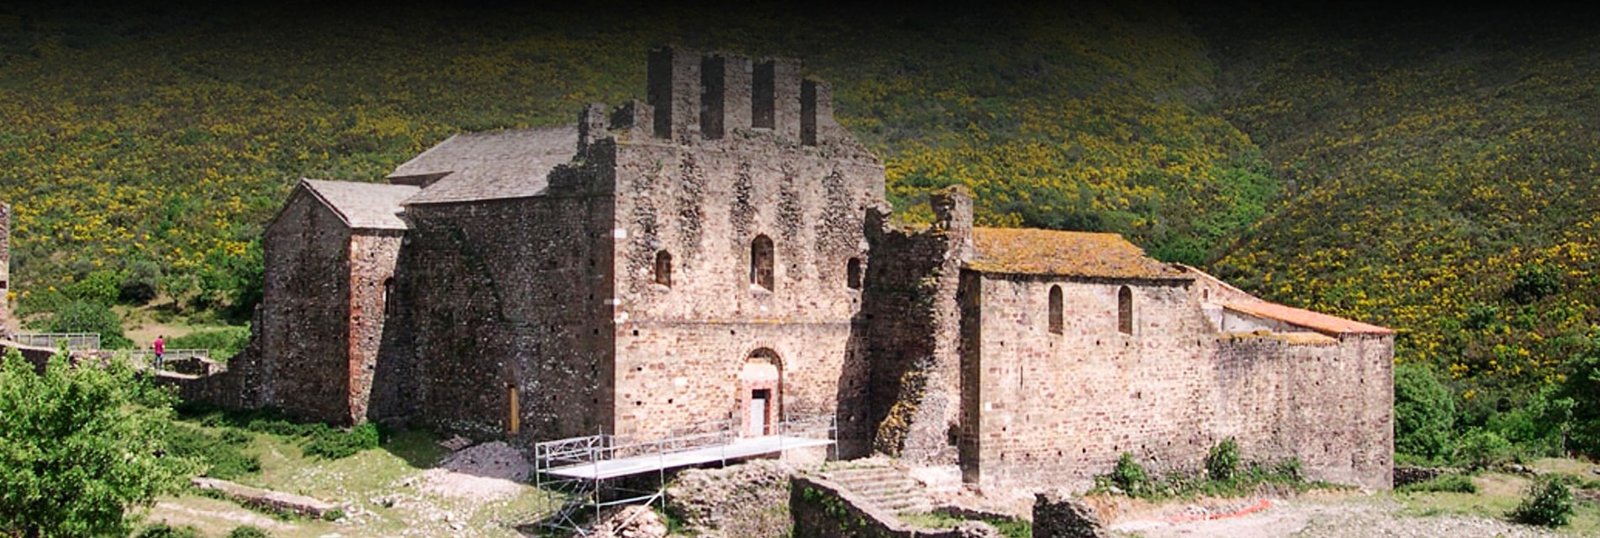 Monasterio de Sant Quirze de Colera header - Origenes de Europa